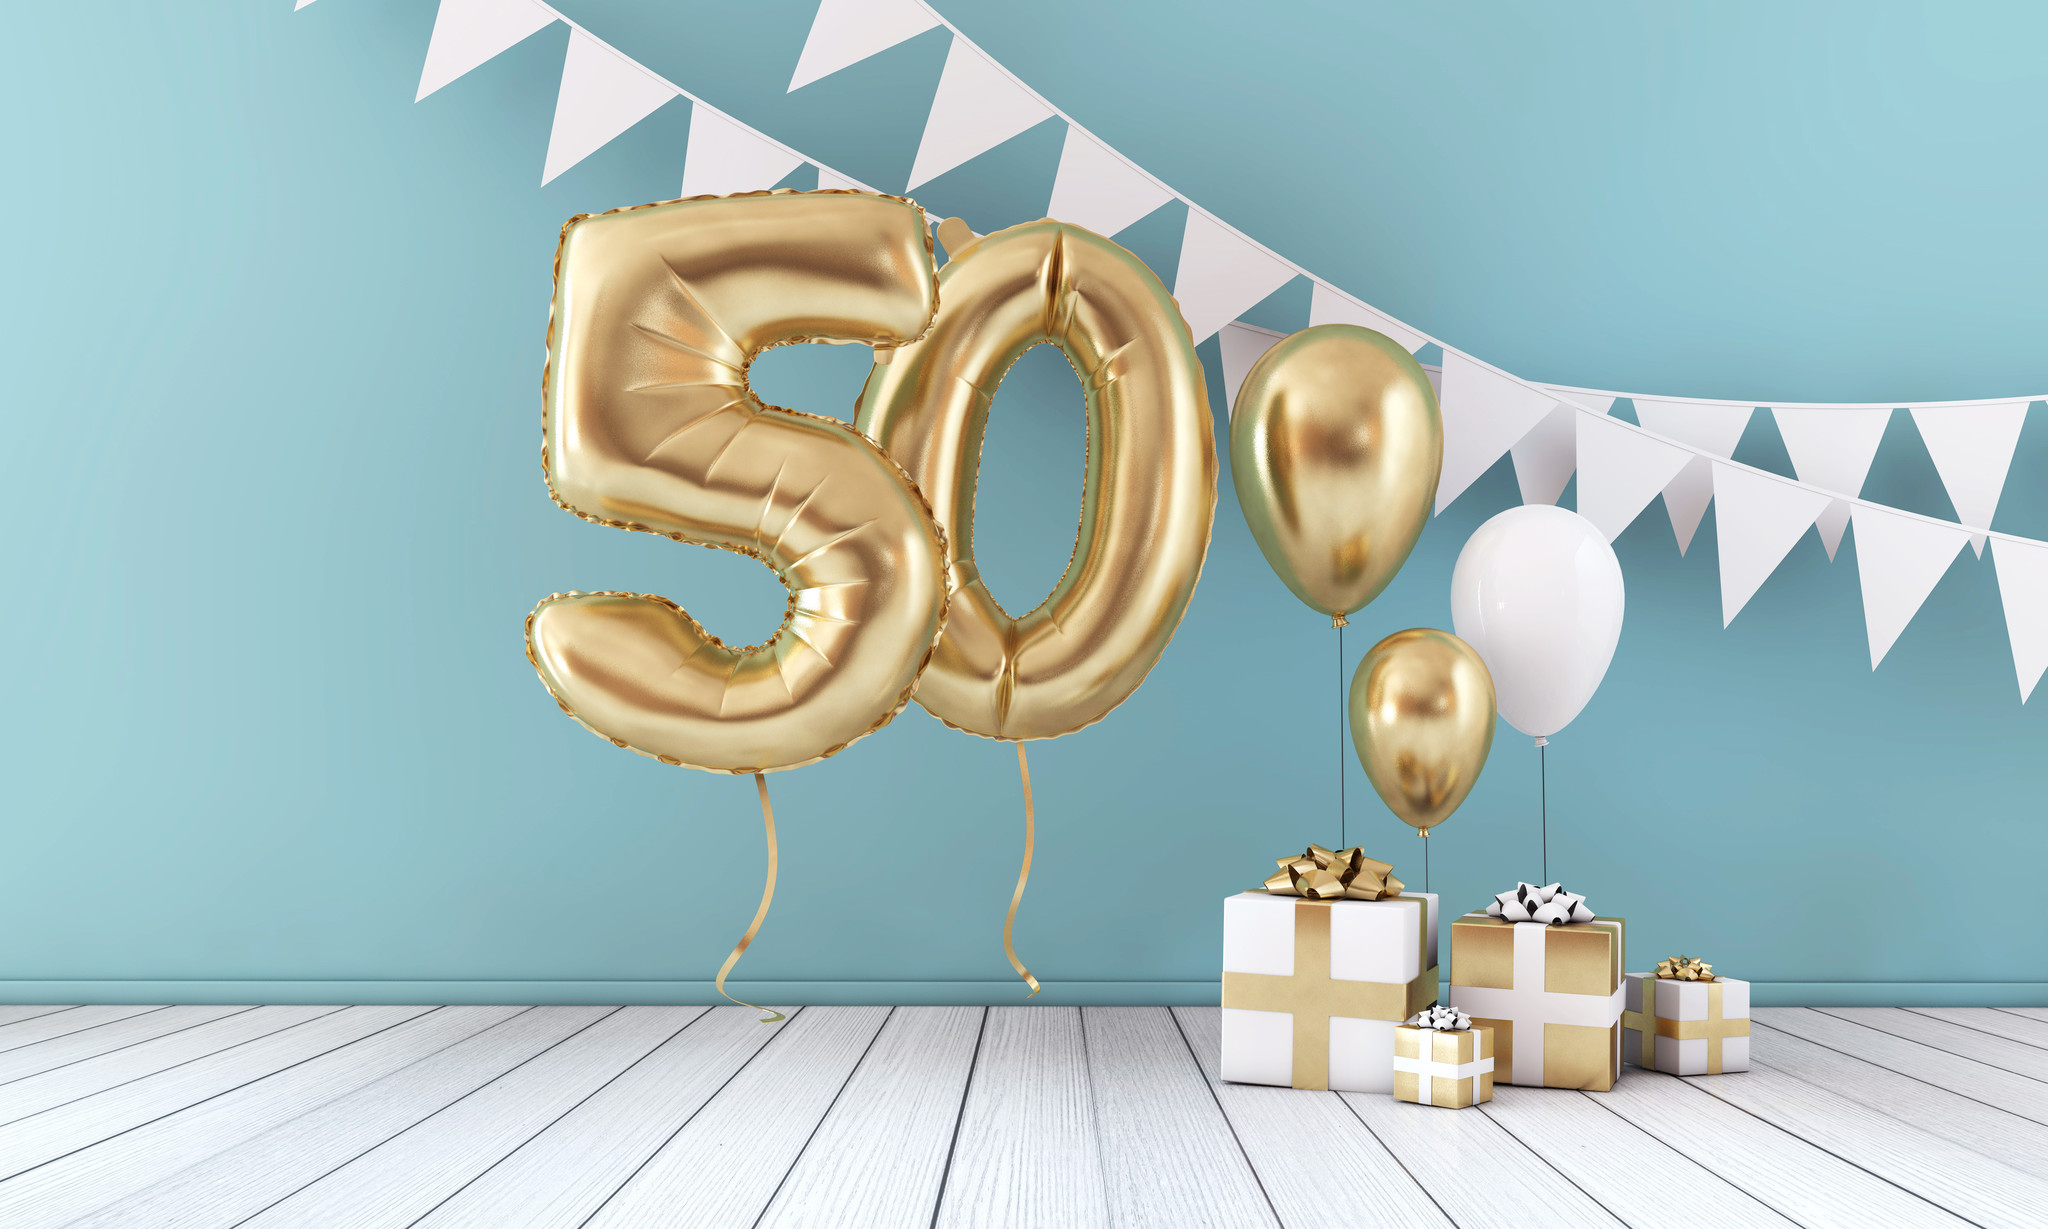 Verbazing eerste Prestatie Een verjaardag 50 jaar vieren? 6 leuke ideeën |Feestartikelen Specialist -  Feestartikelen Specialist